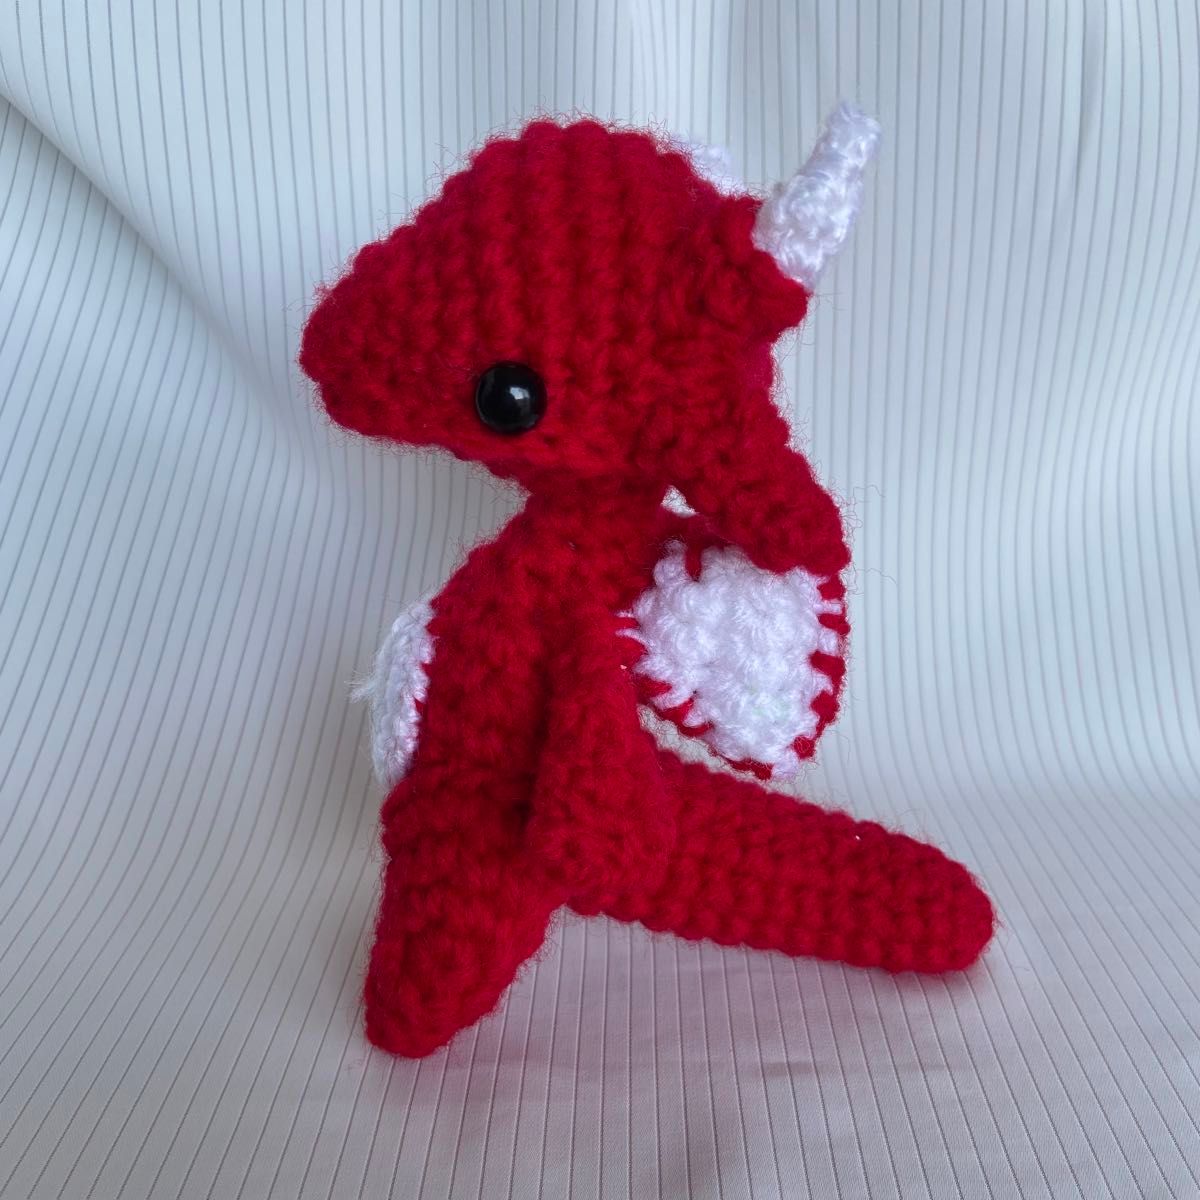 ドラゴン　龍　竜　編みぐるみ　あみぐるみ　ハンドメイド　ぬいぐるみ　赤　赤色　レッド　爬虫類　ハチュウ類　手作り　編み物